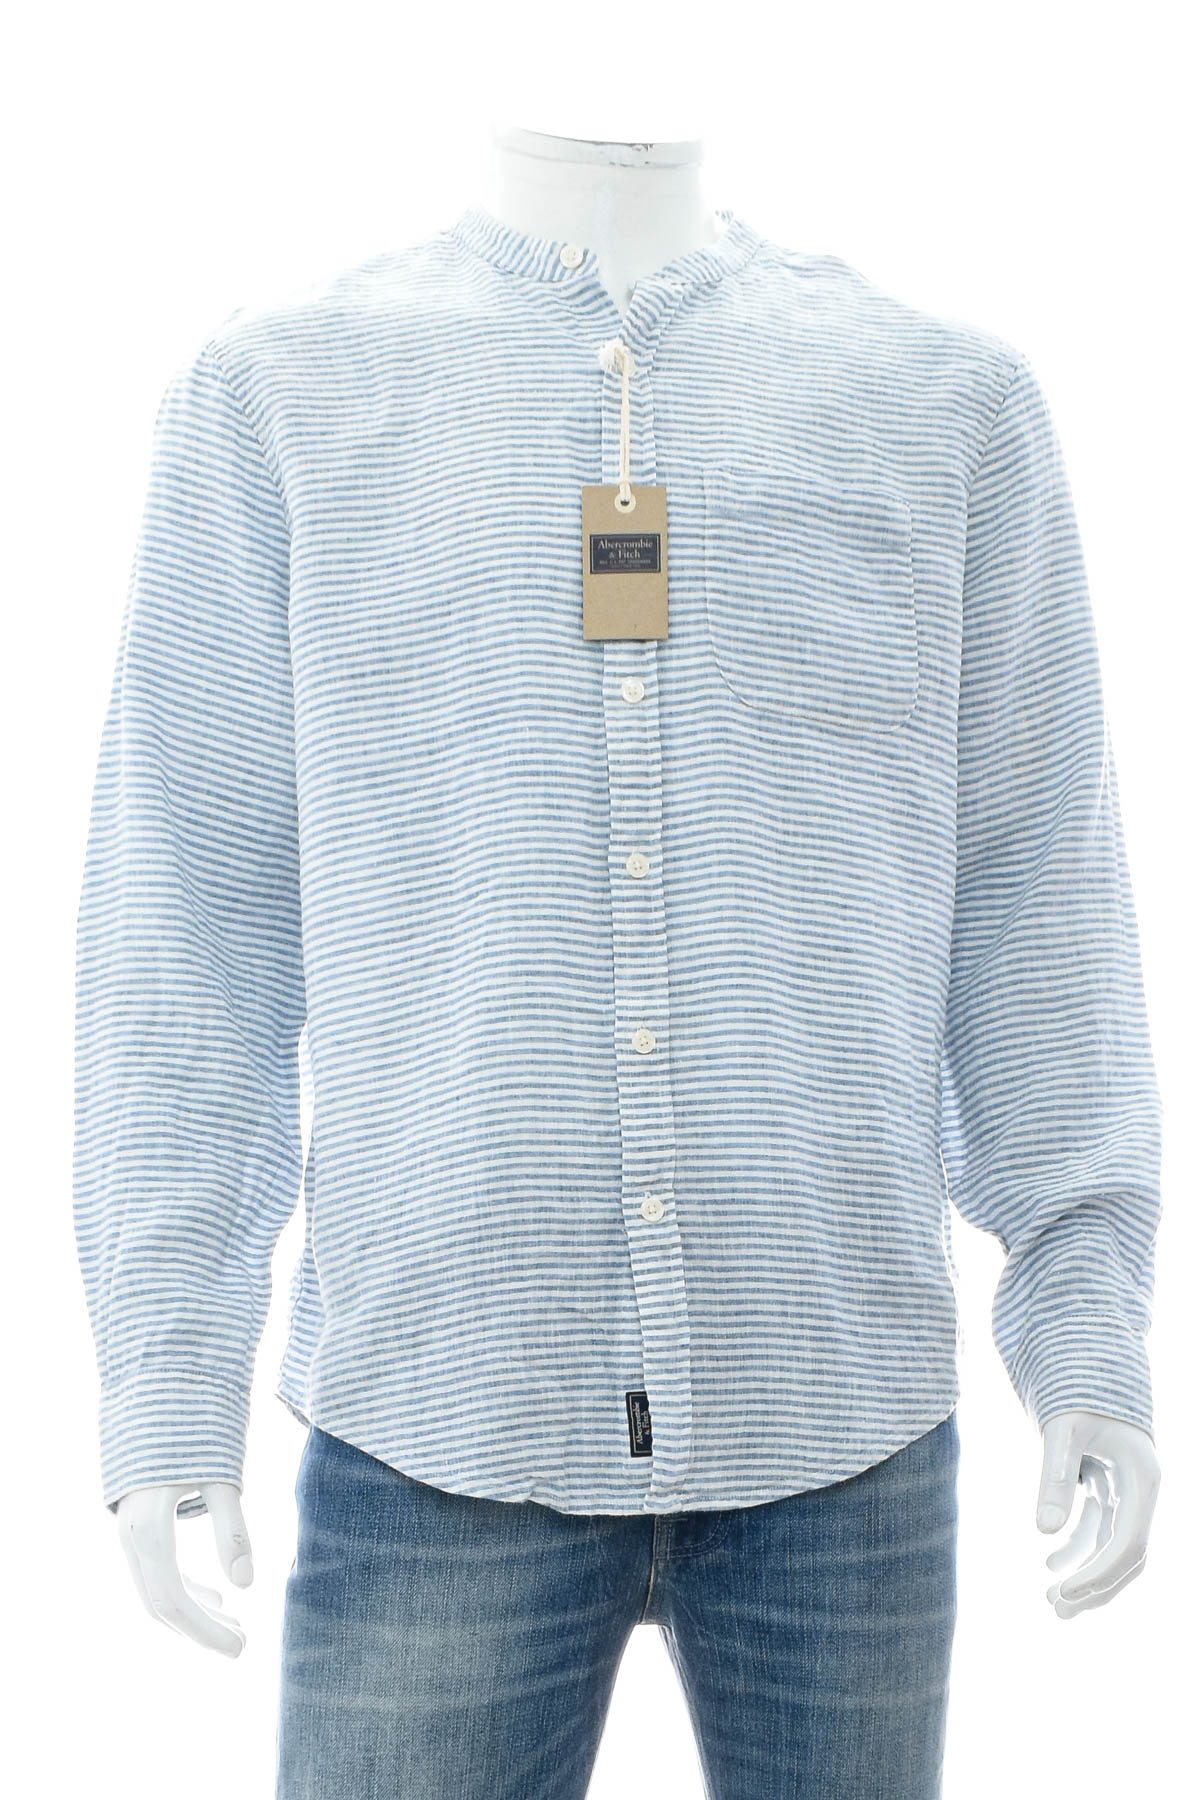 Ανδρικό πουκάμισο - Abercrombie & Fitch - 0